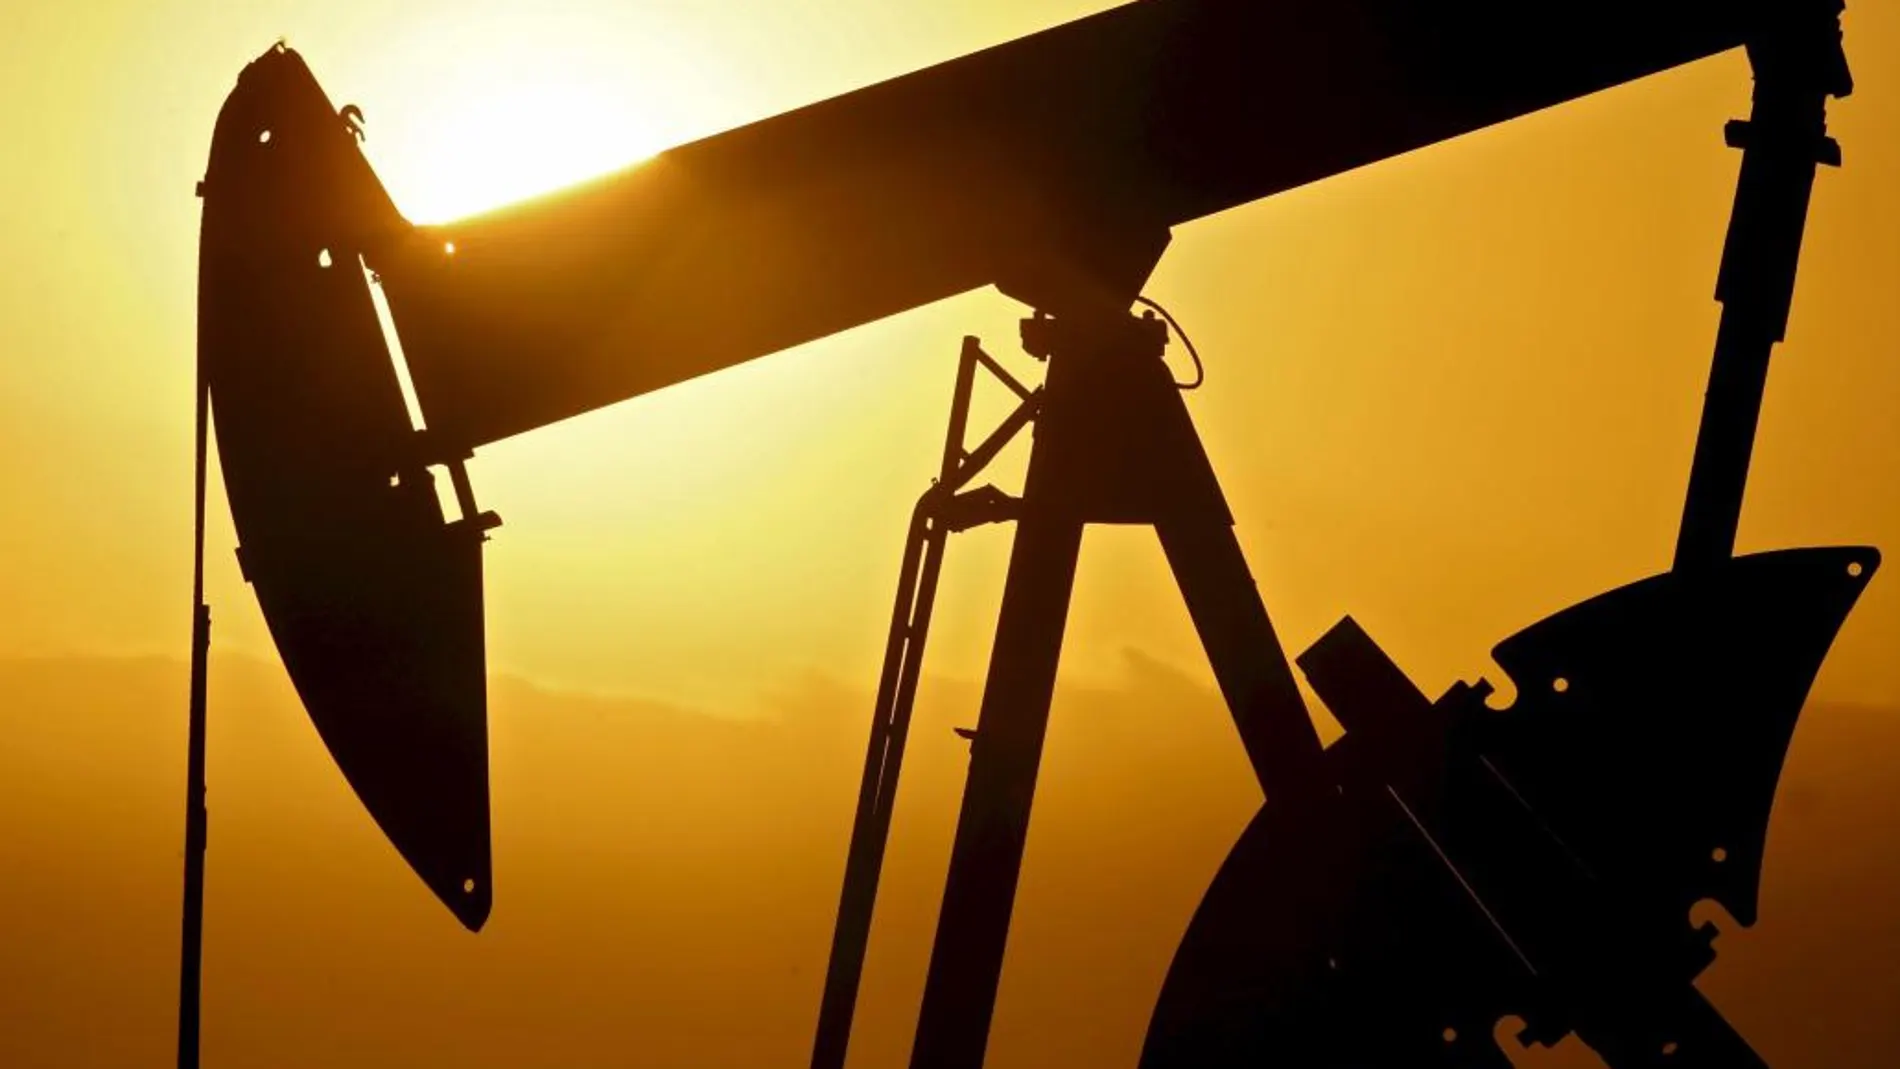 El petróleo ha tomado el relevo de gas en la tensión de precios